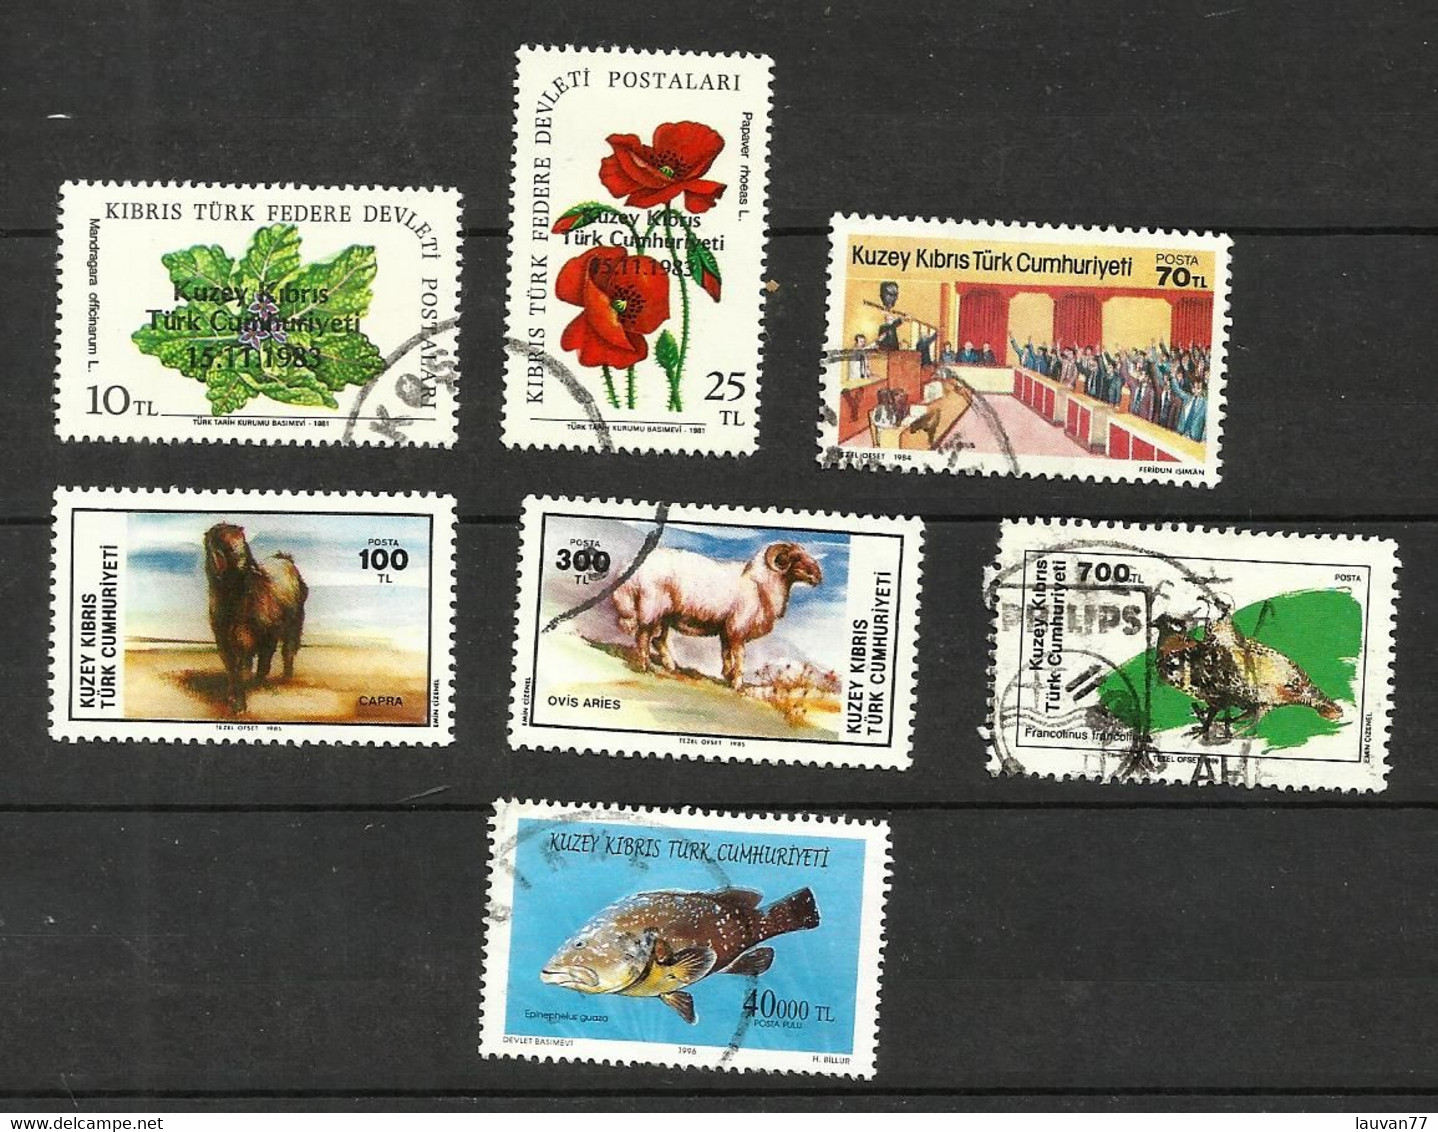 R.T.C.N N°123, 125, 139, 147, 149, 233, 391 Cote 7.25 Euros - Used Stamps